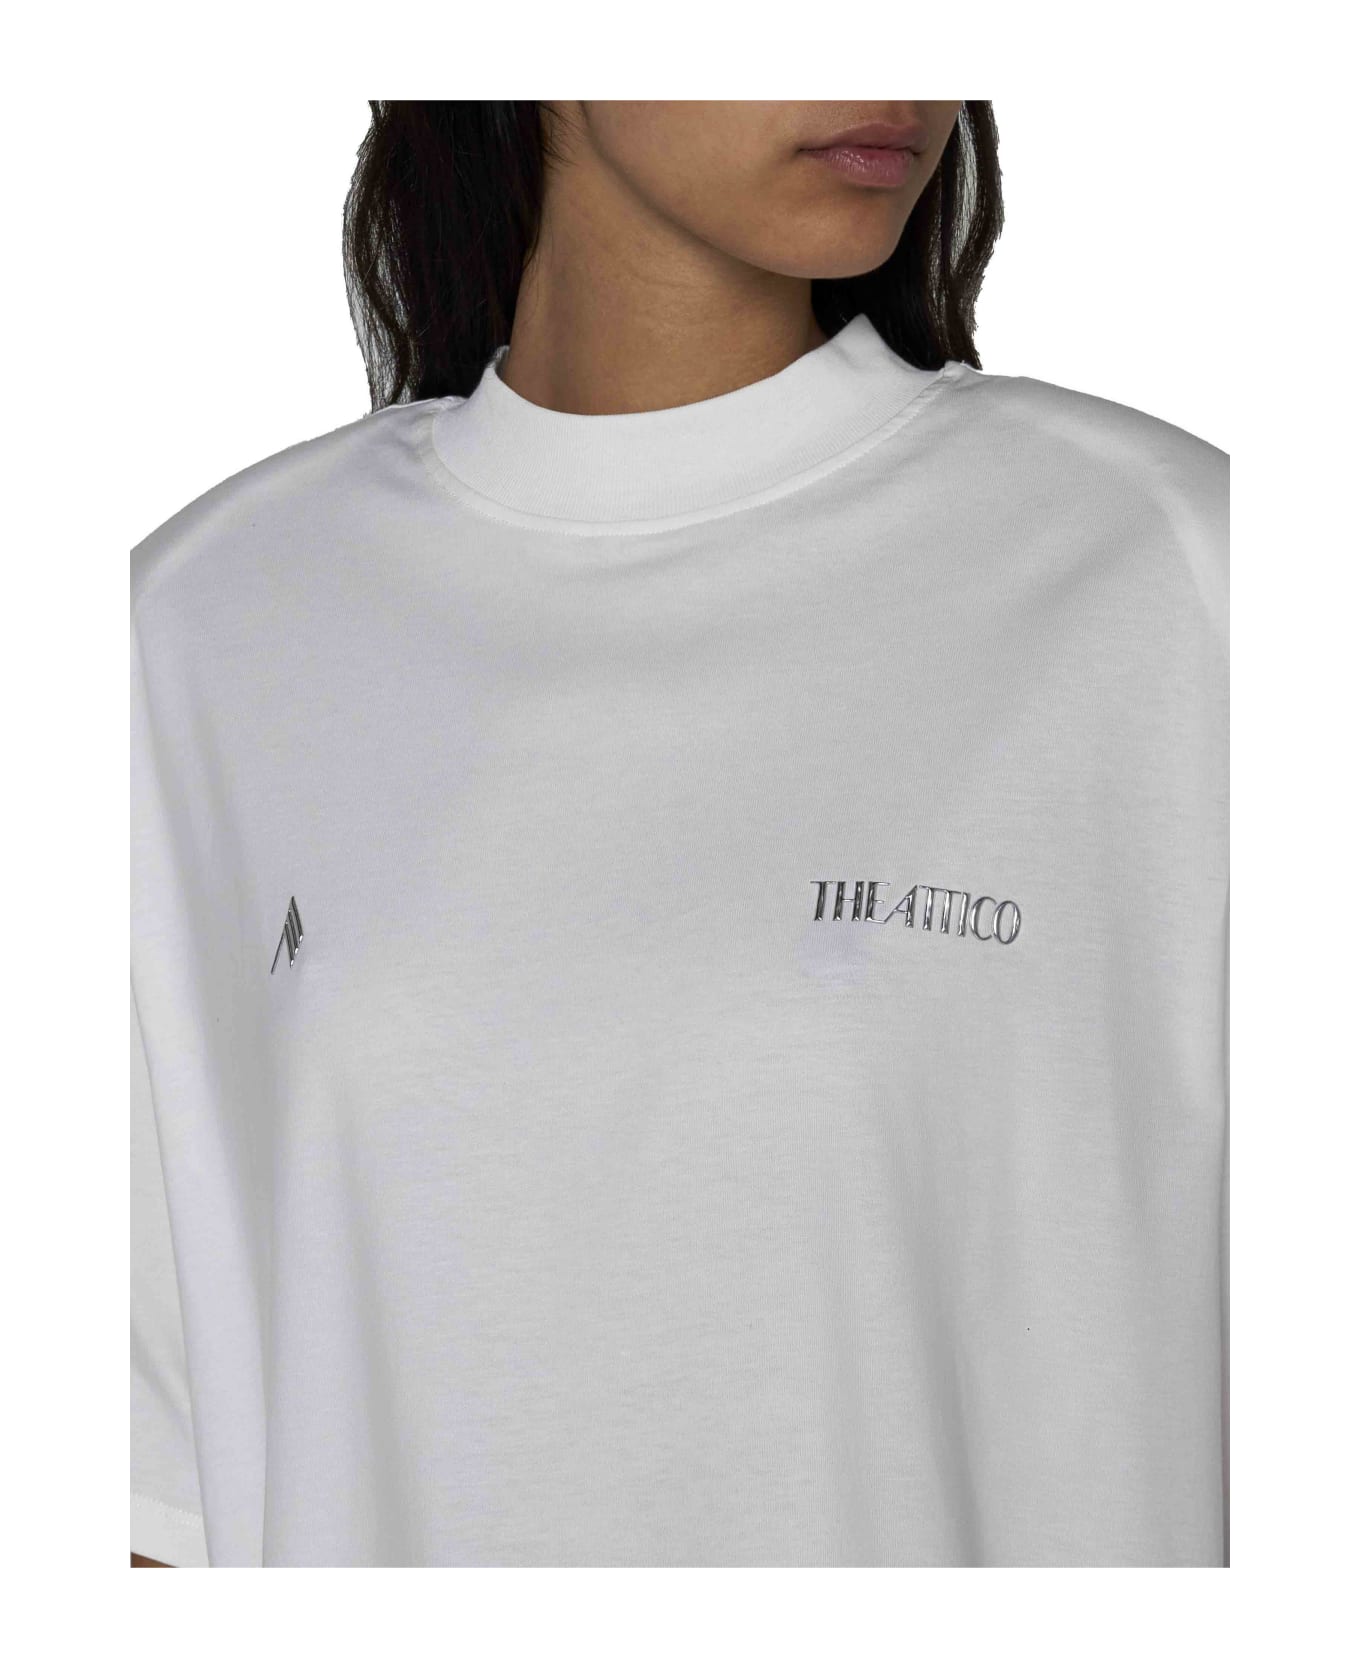 The Attico T-Shirt - White